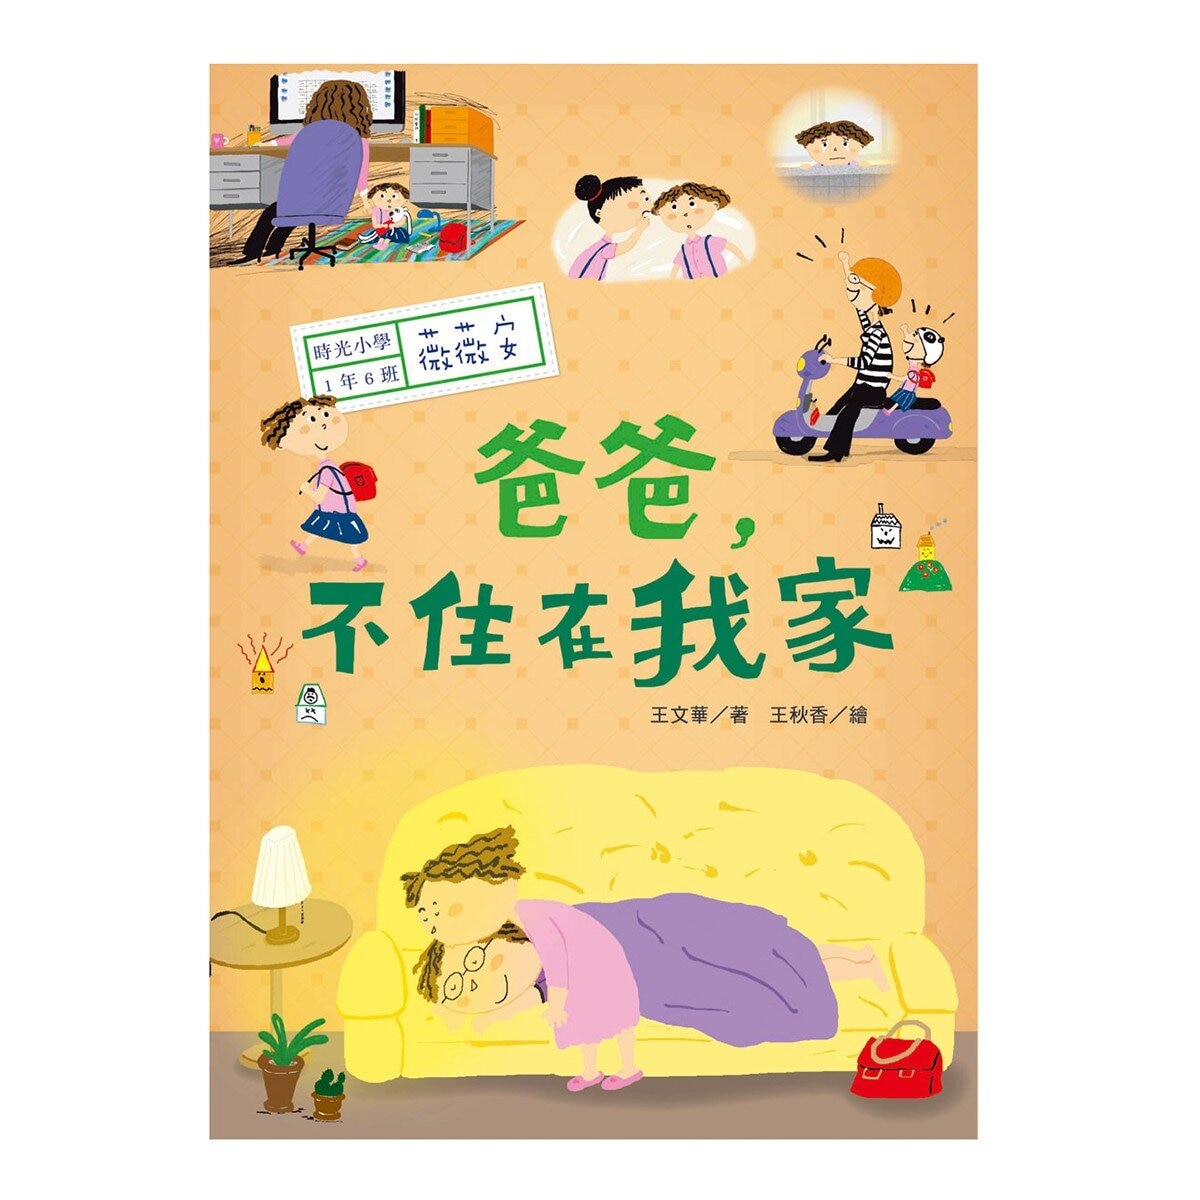 時光小學(全套6冊)：金鼎獎作家王文華最動人的家庭議題作品，深刻描繪非典型家庭孩子的內心風景